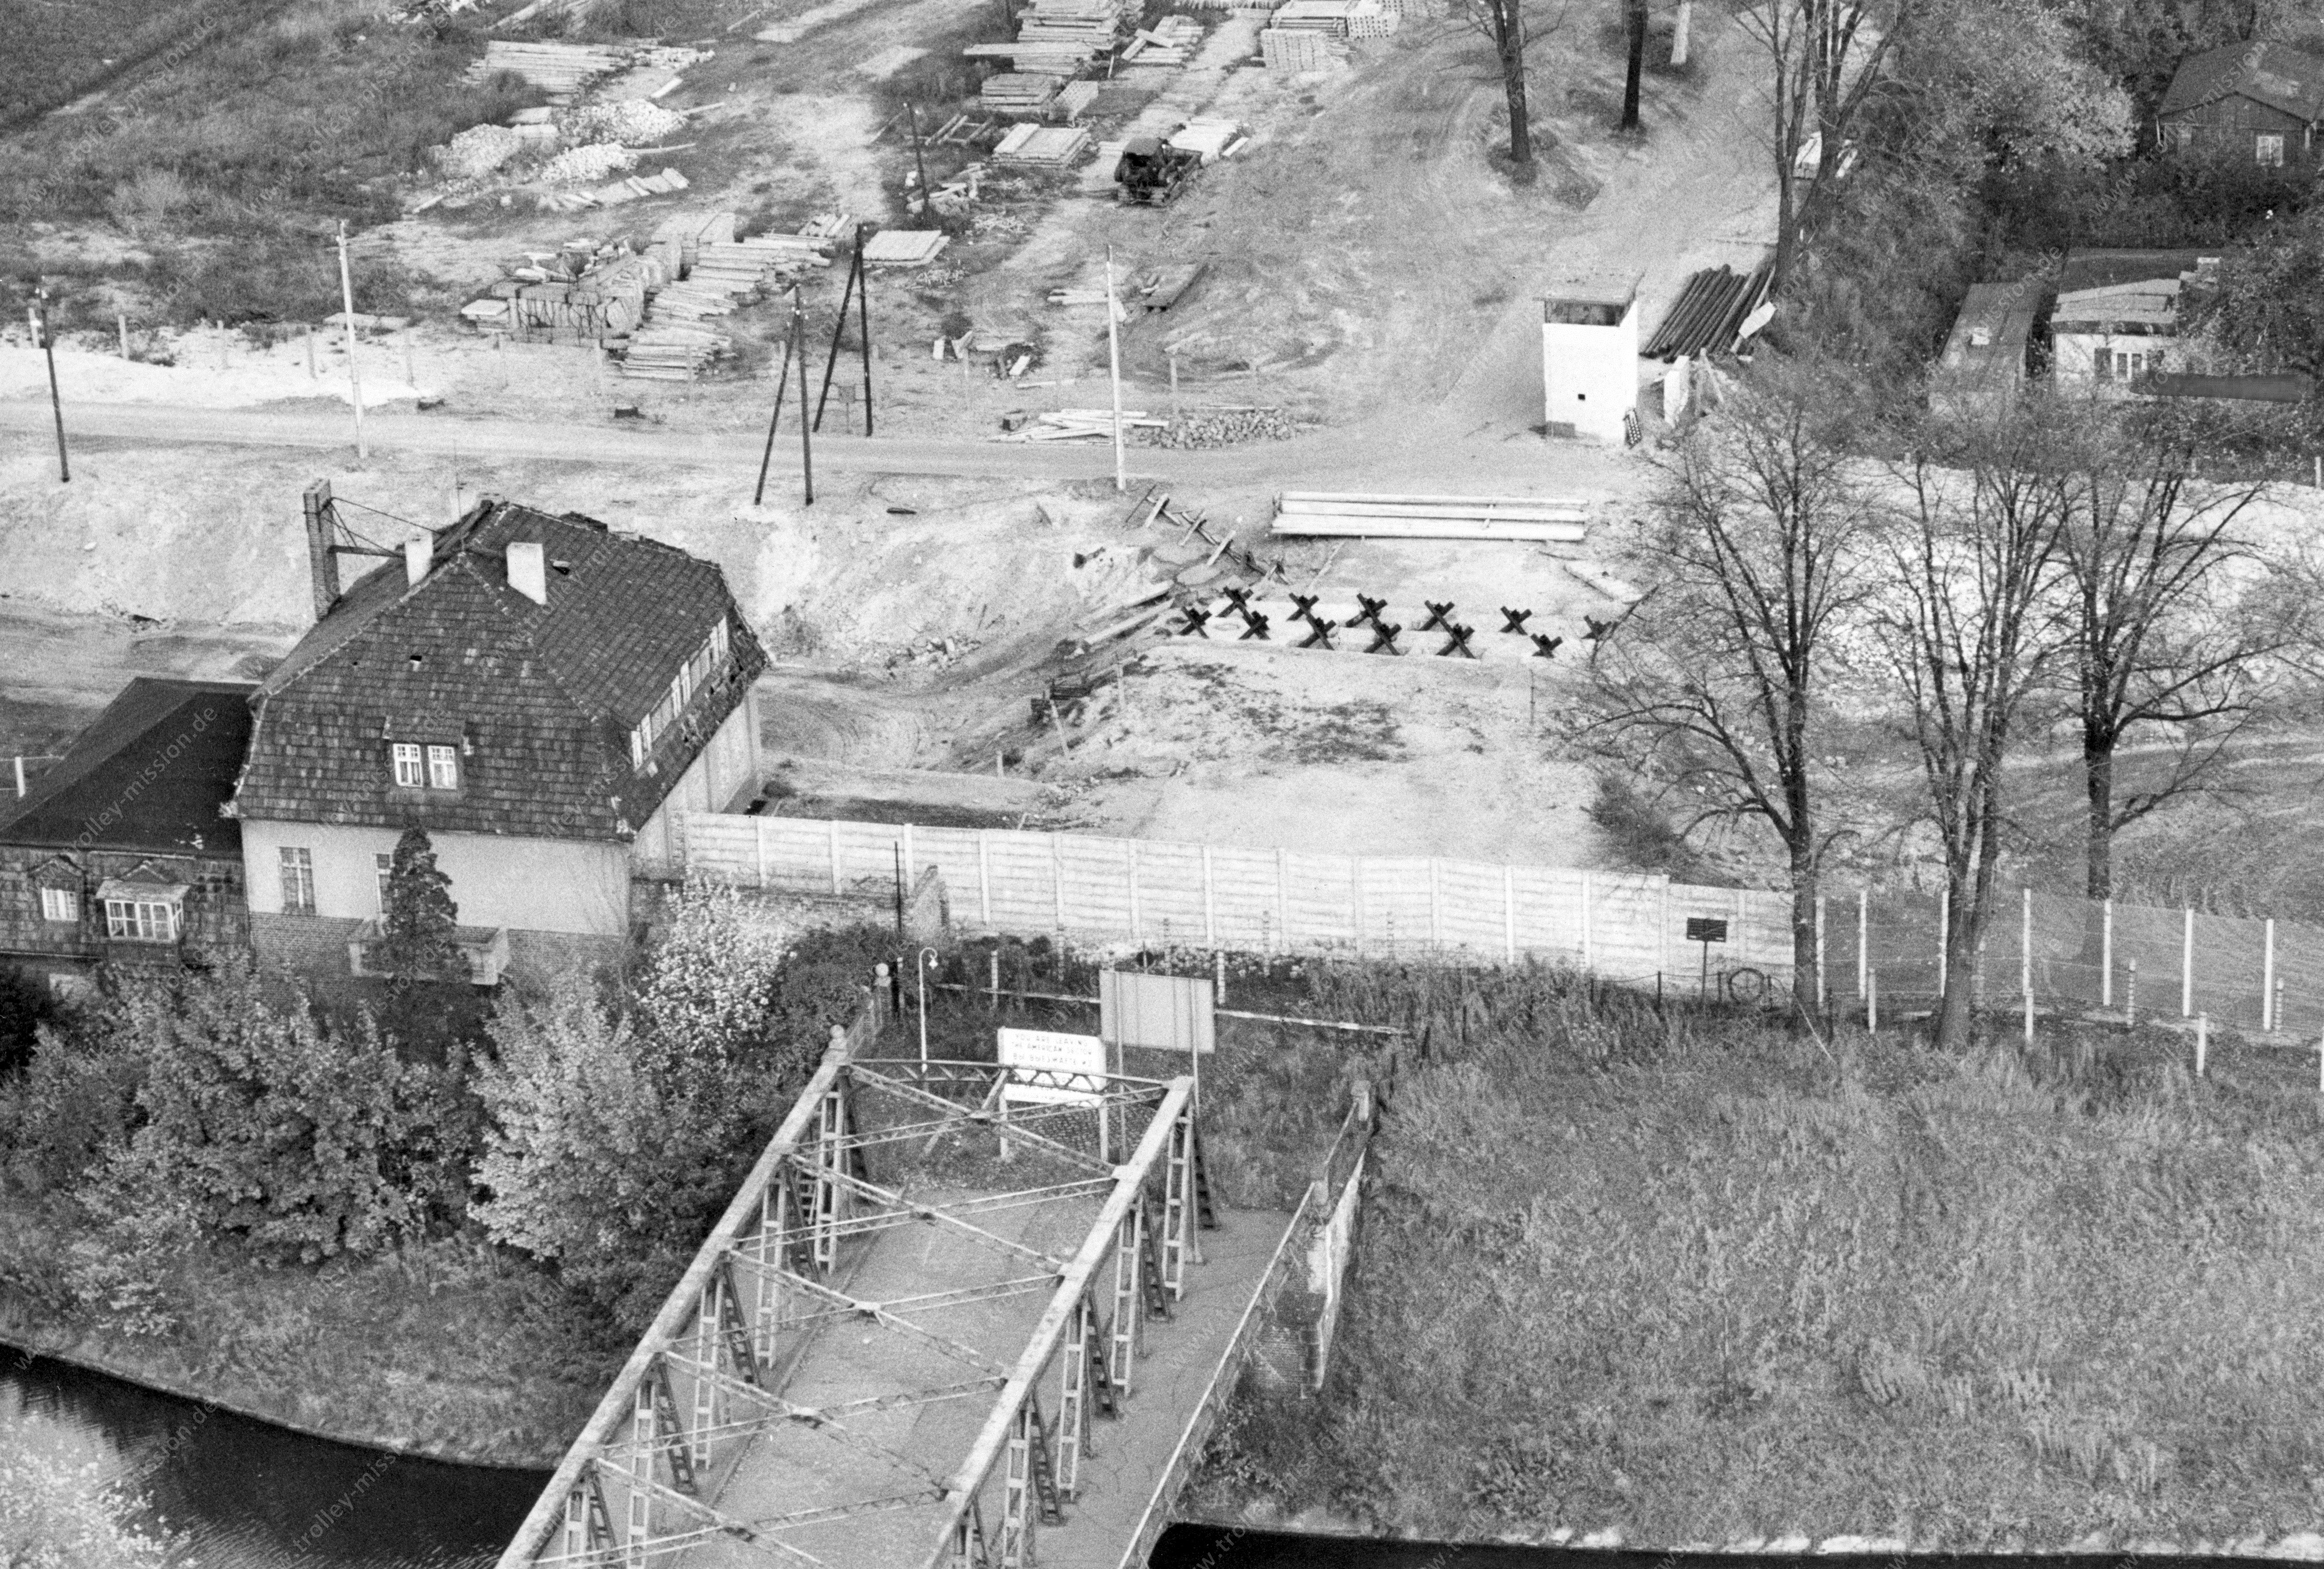 Luftaufnahme Alte Späthbrücke am Teltowkanal vom 11. August 1968